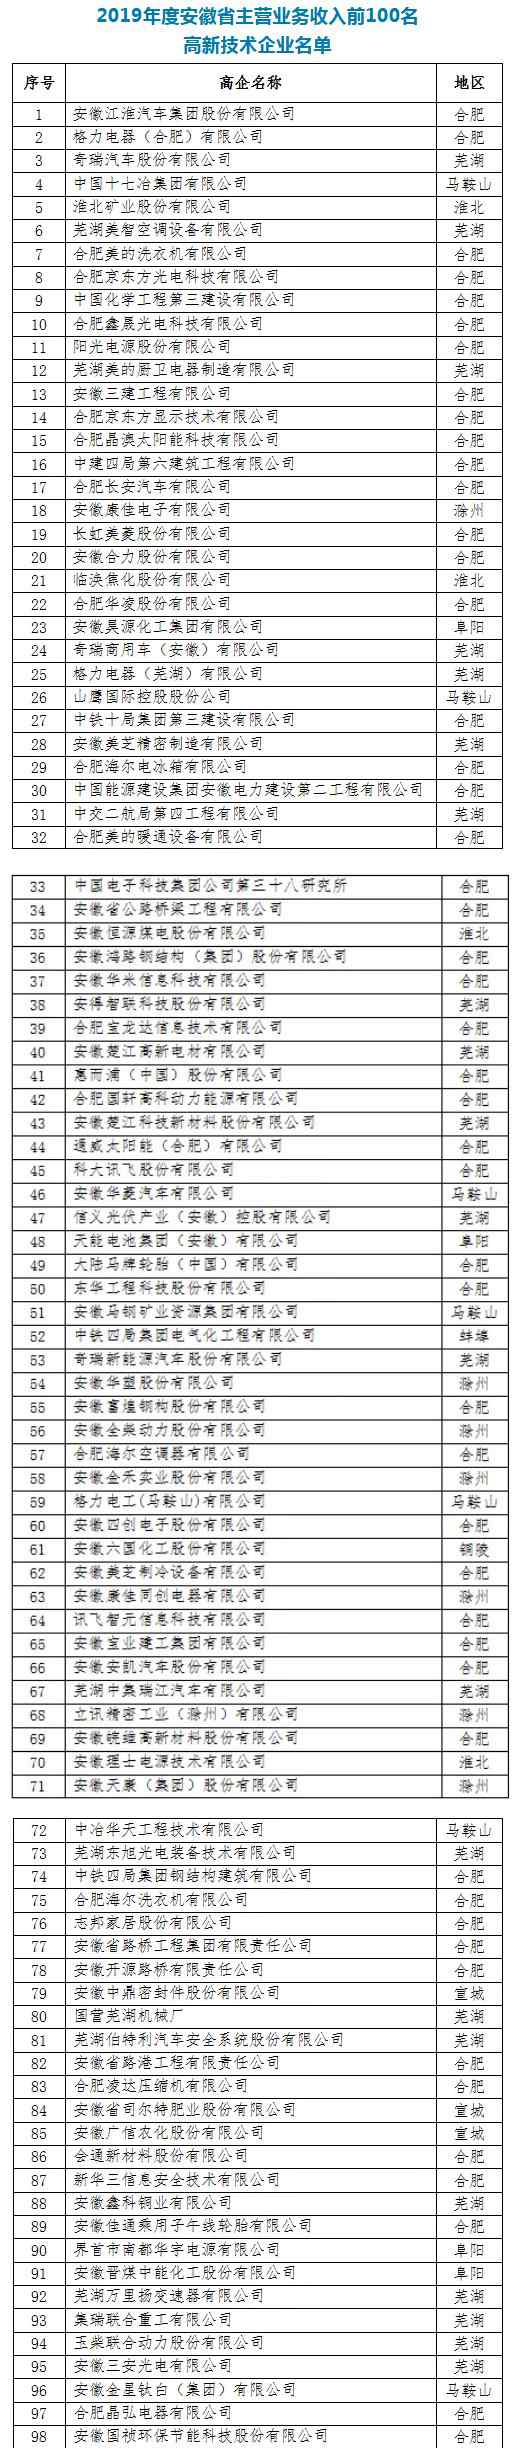 安徽企业名录 2019安徽高新技术企业100强名单发布 附具体名单